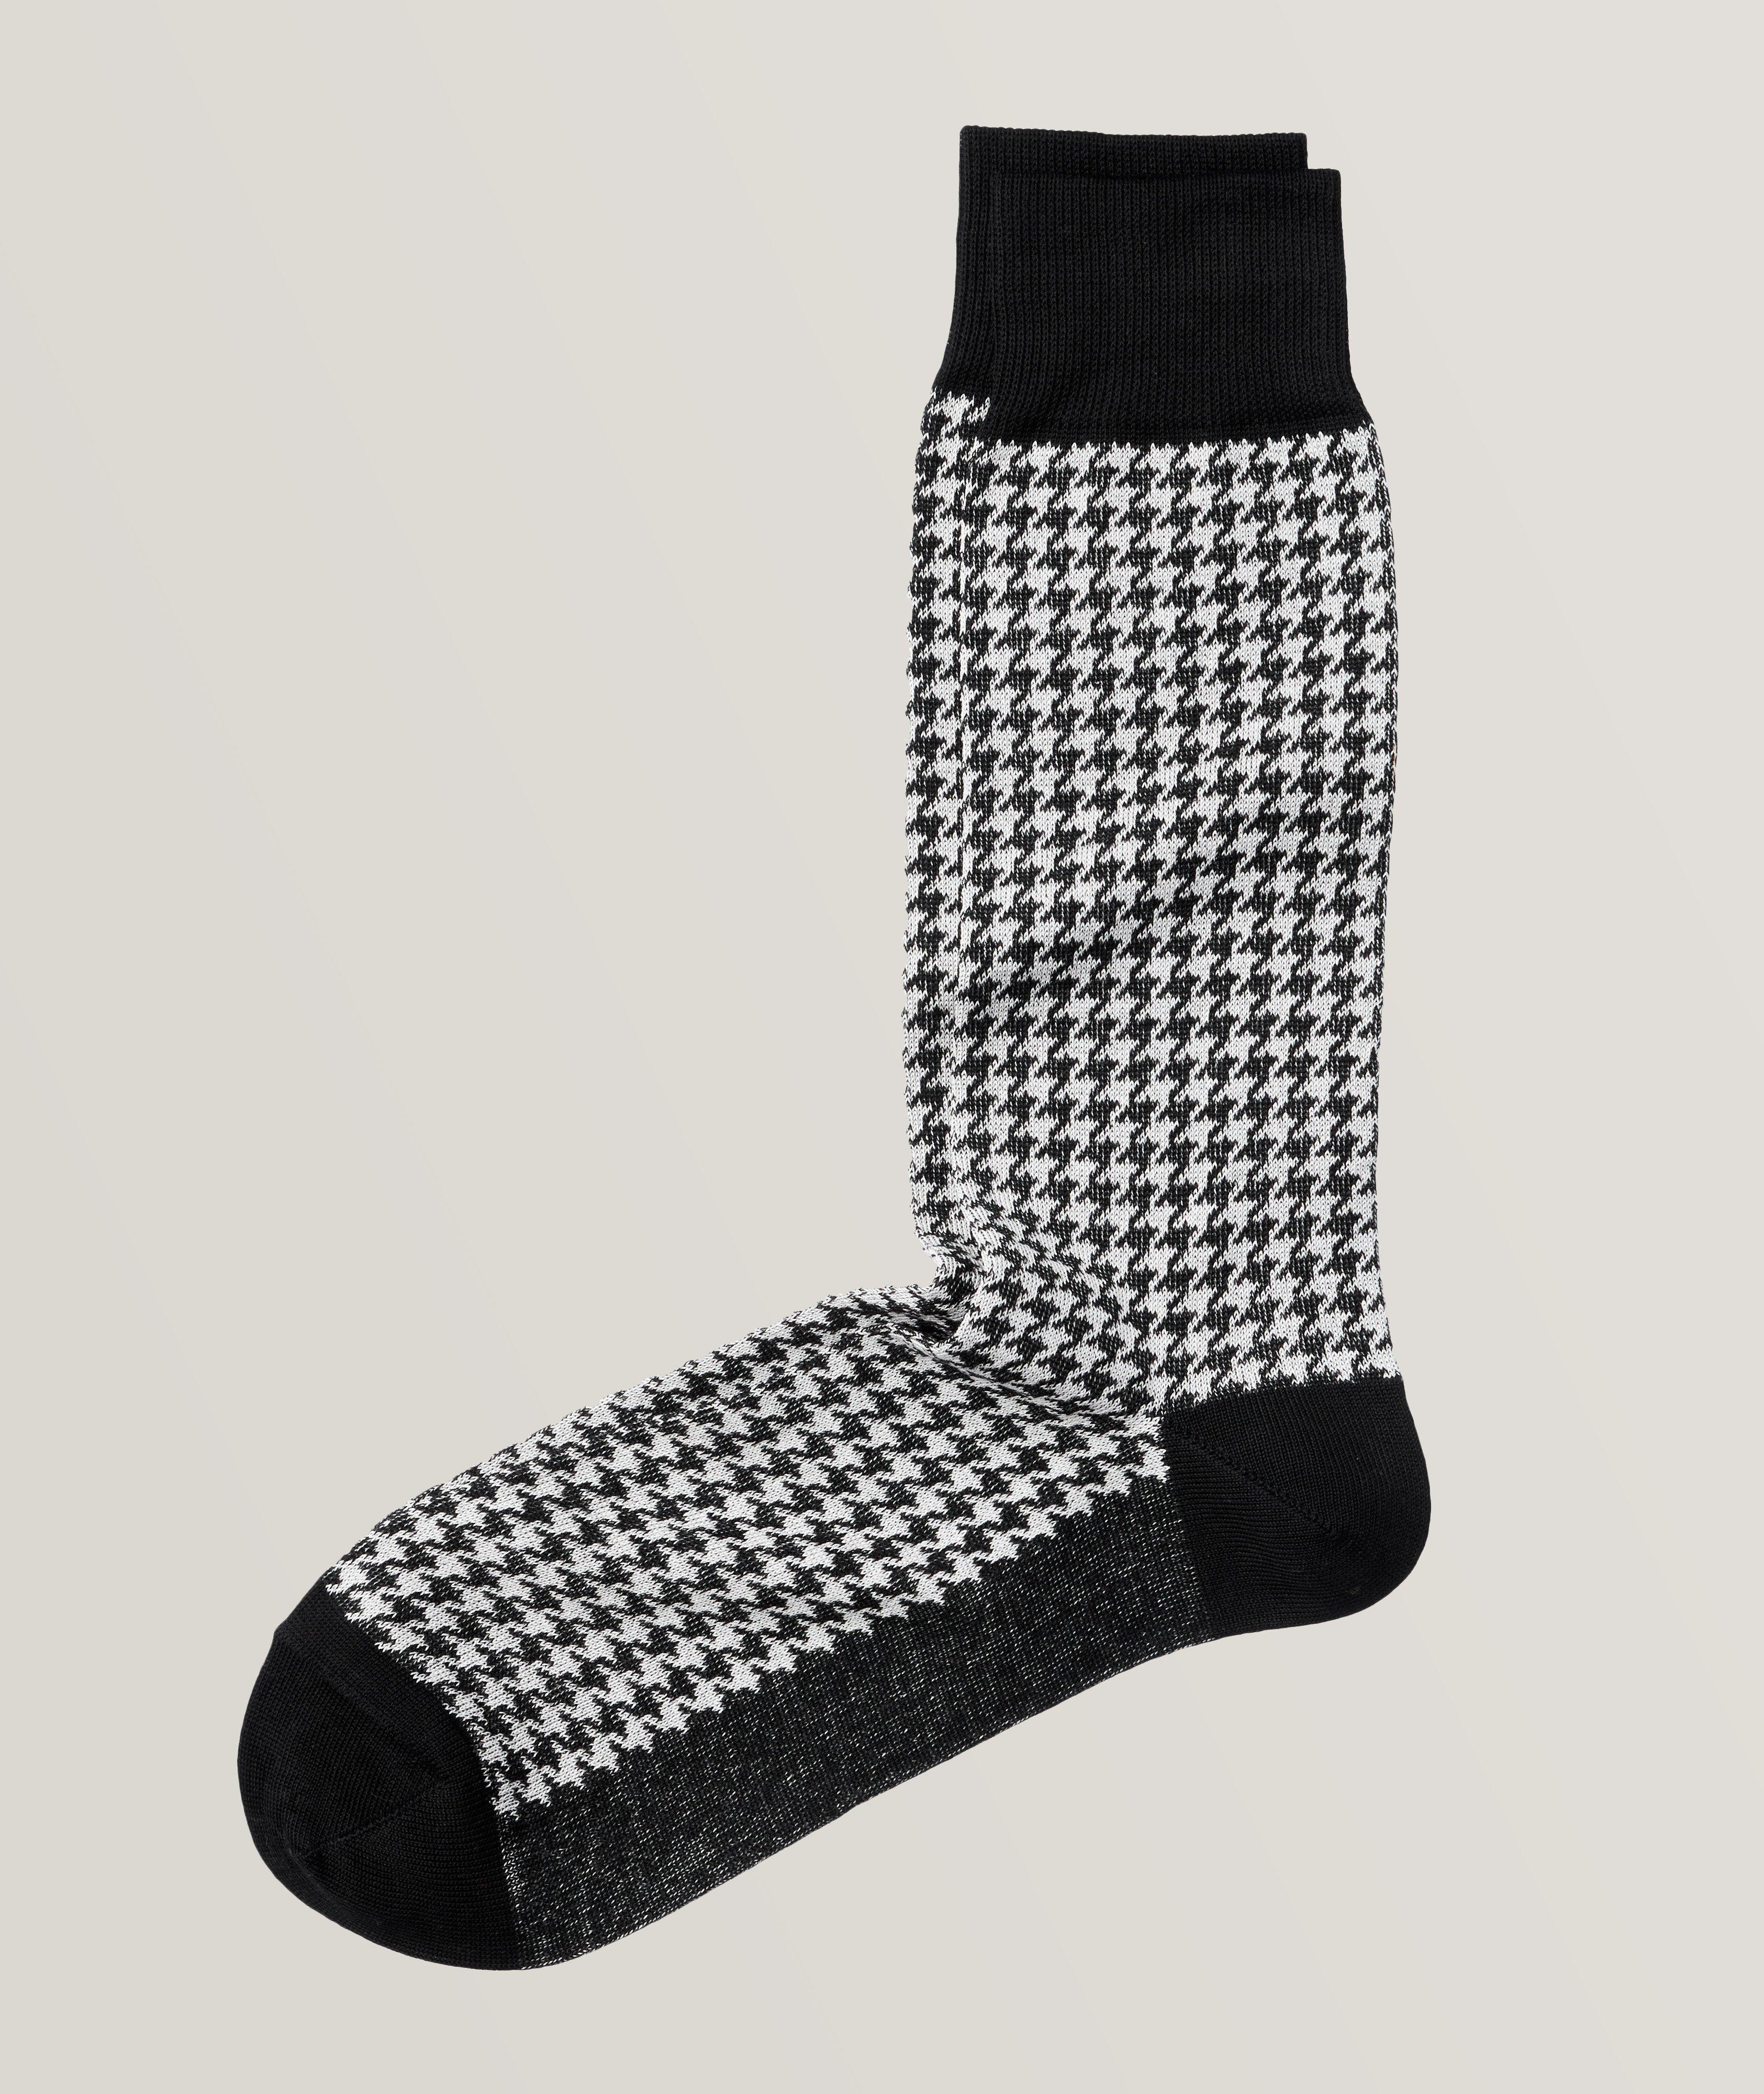 Houndstooth Cotton Blend Socks image 0